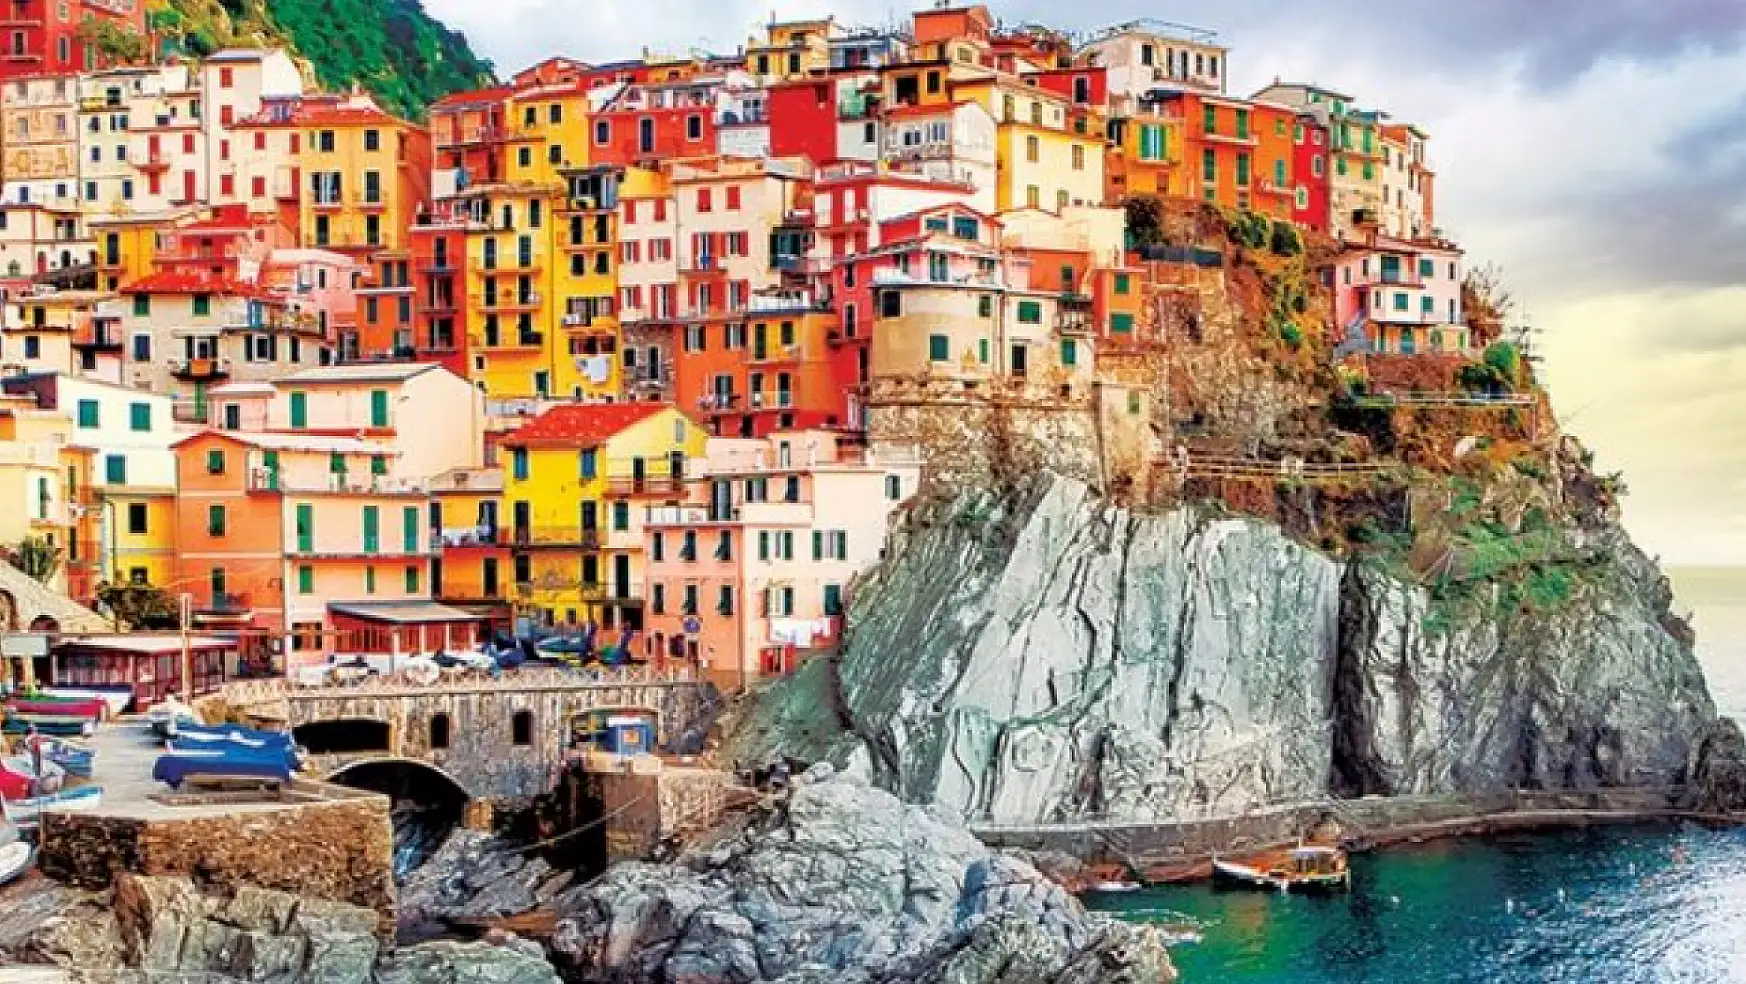 İtalya'nın eşsiz güzellikleri: Cinque Terre'nin benzersiz dokusu